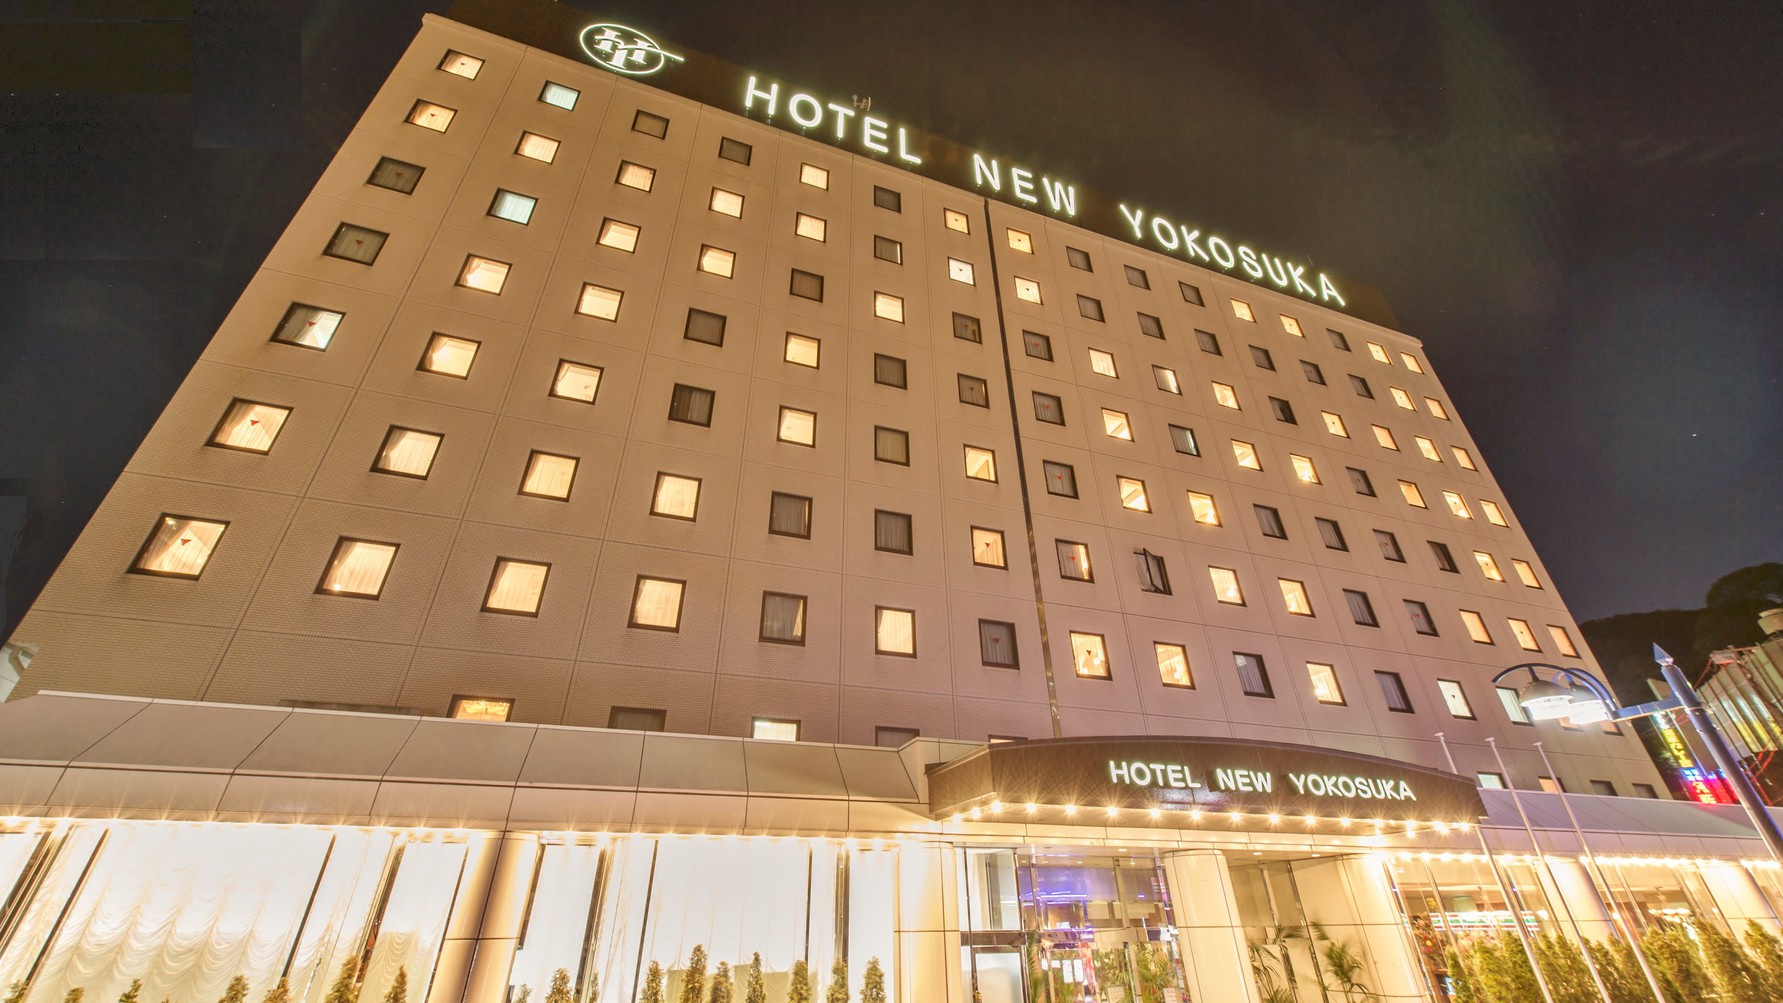 横須賀でおすすめのホテルを探してます。